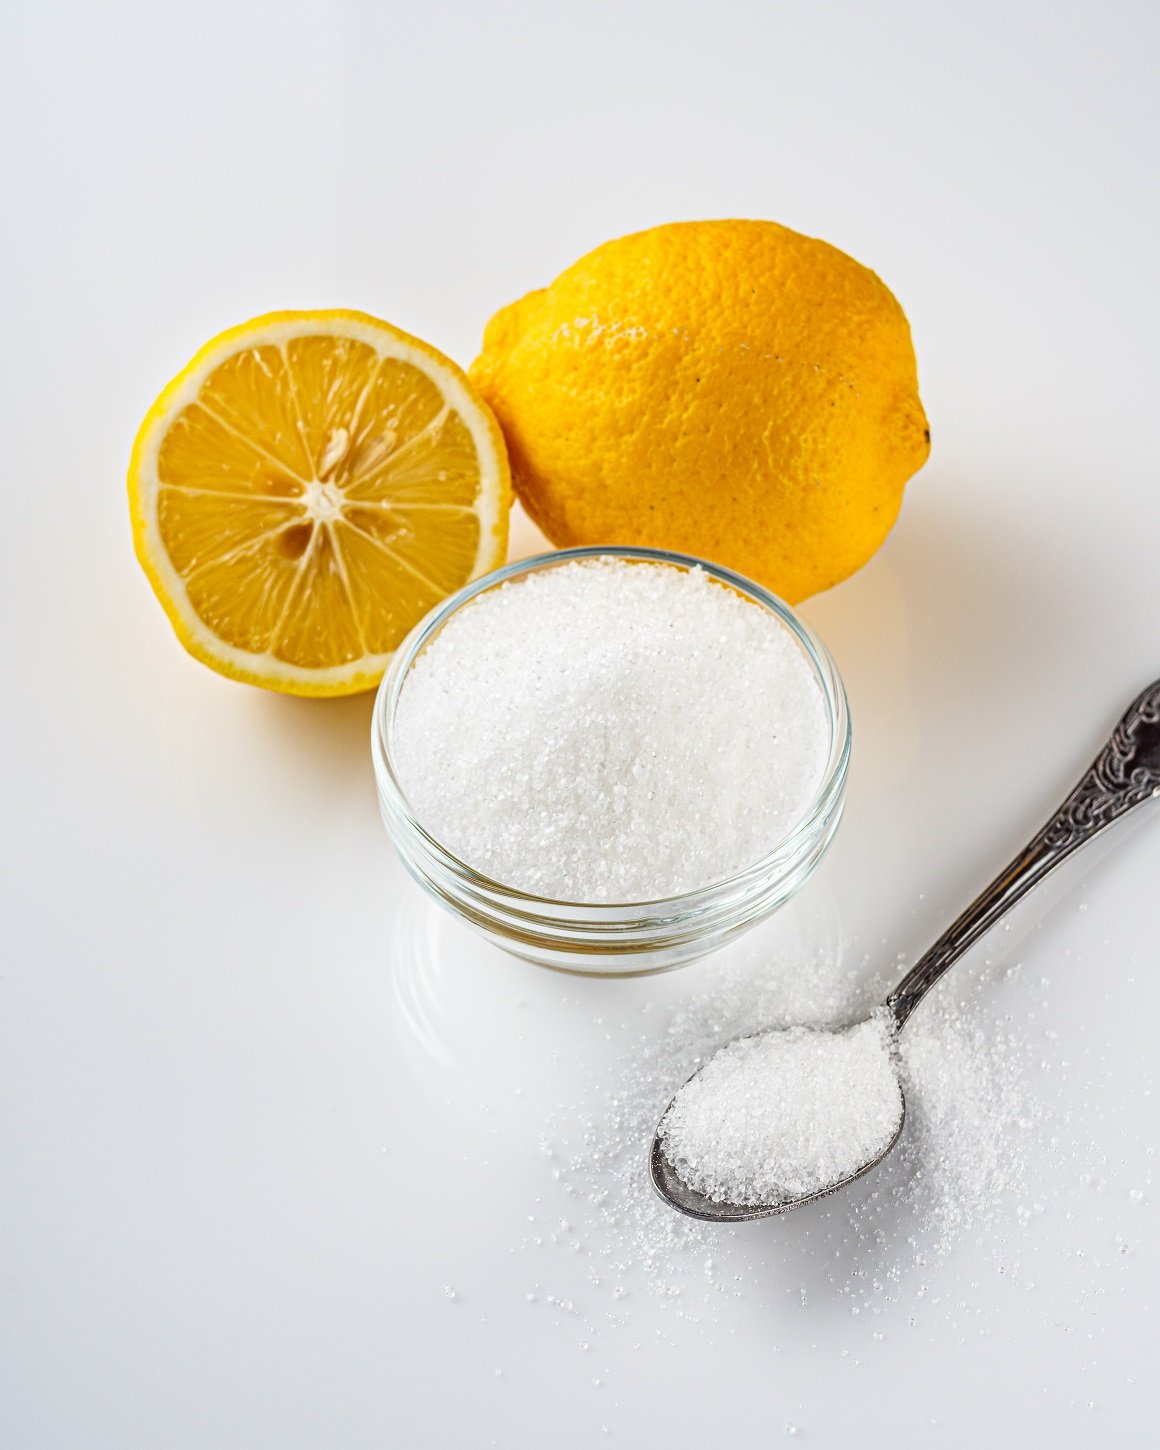 Limunska kiselina je slaba organska kiselina koja se nalazi u citrusnom voću poput limuna, naranče i limete